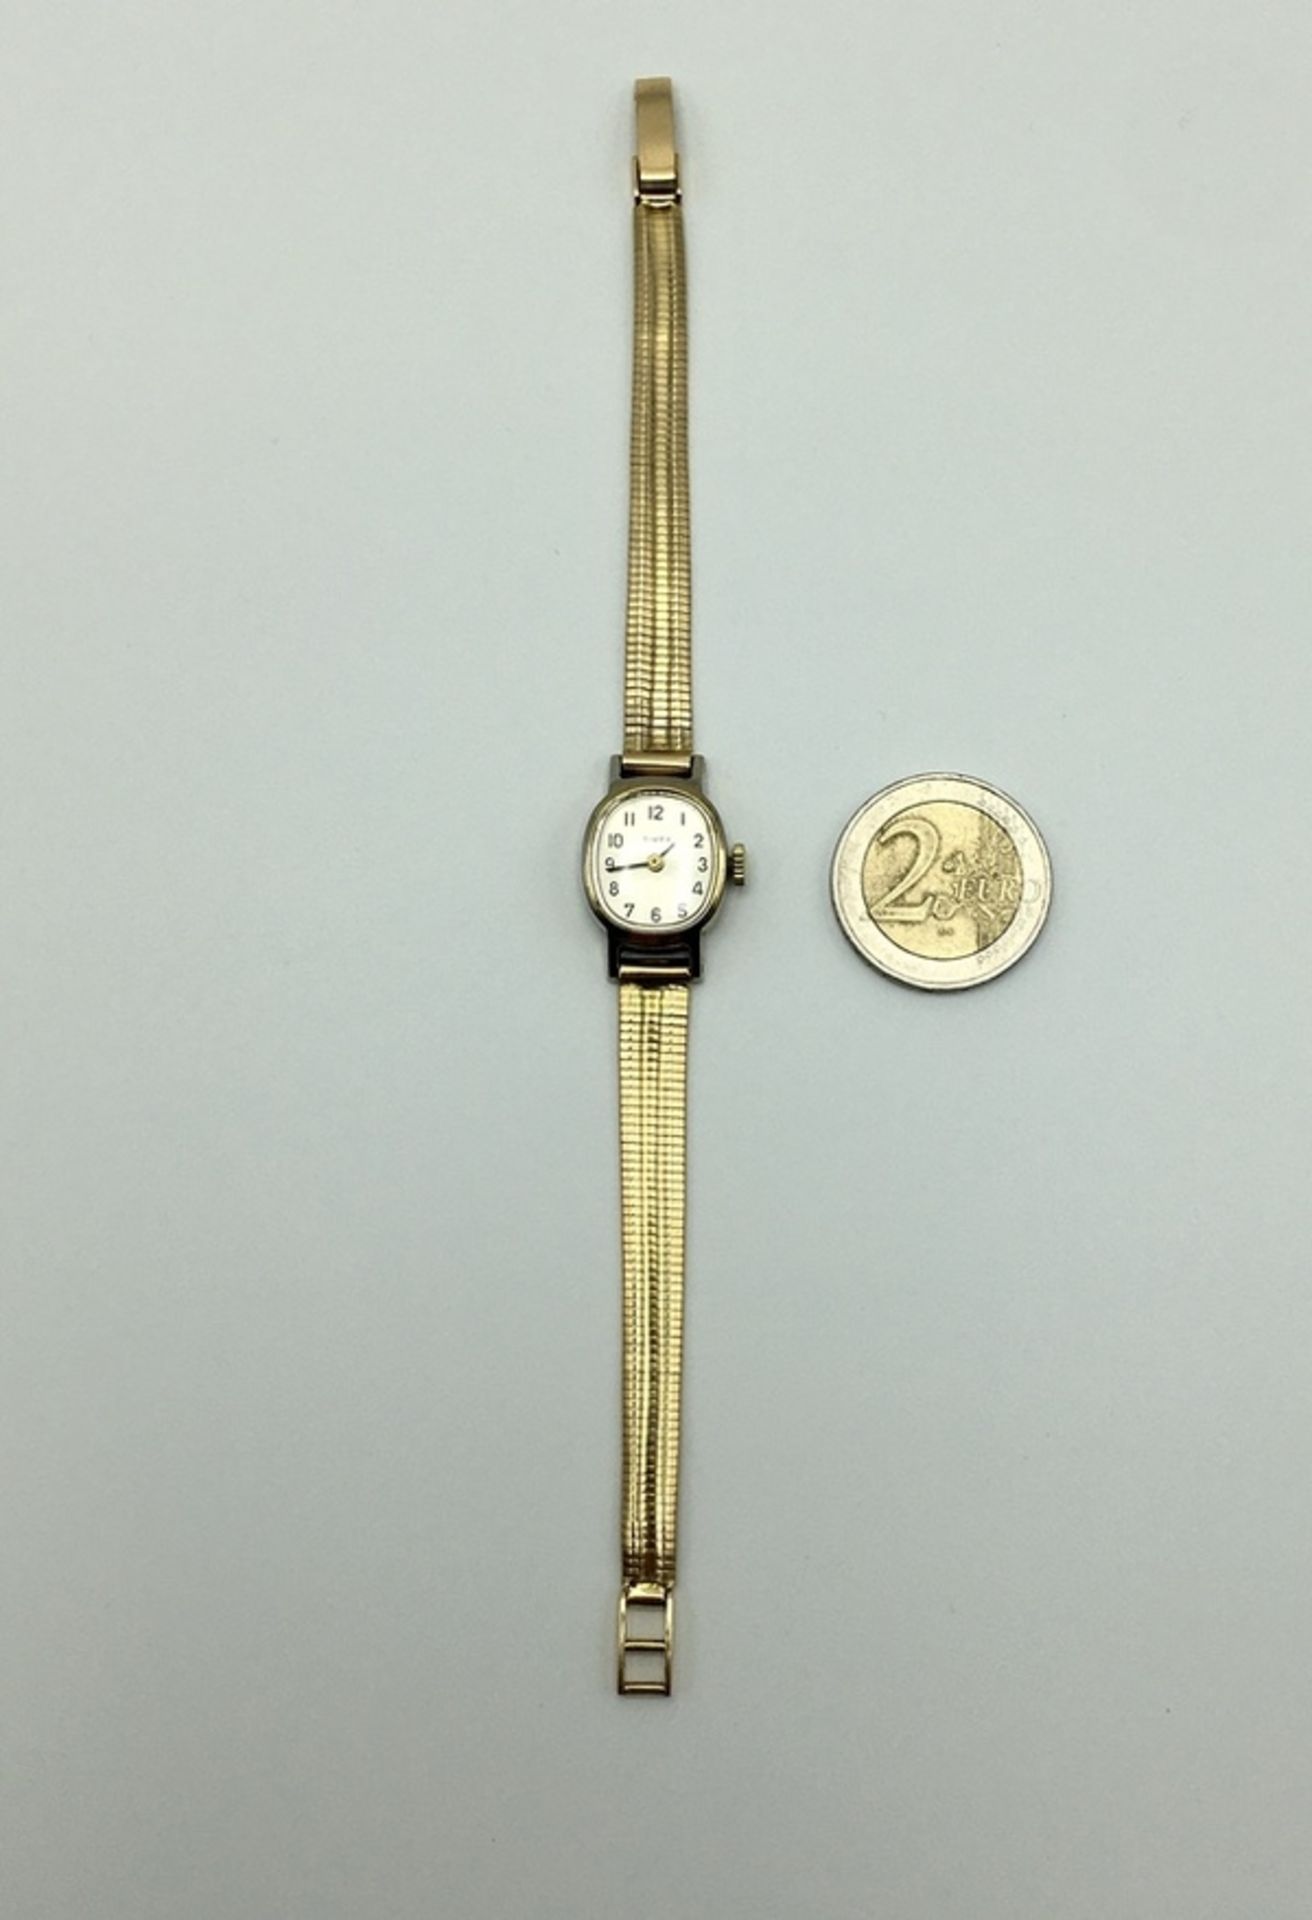 (Goud) Goud, dameshorloge Timex met massief gouden horlogeband, midden 20e eeuw. Verona Italië - Bild 2 aus 7